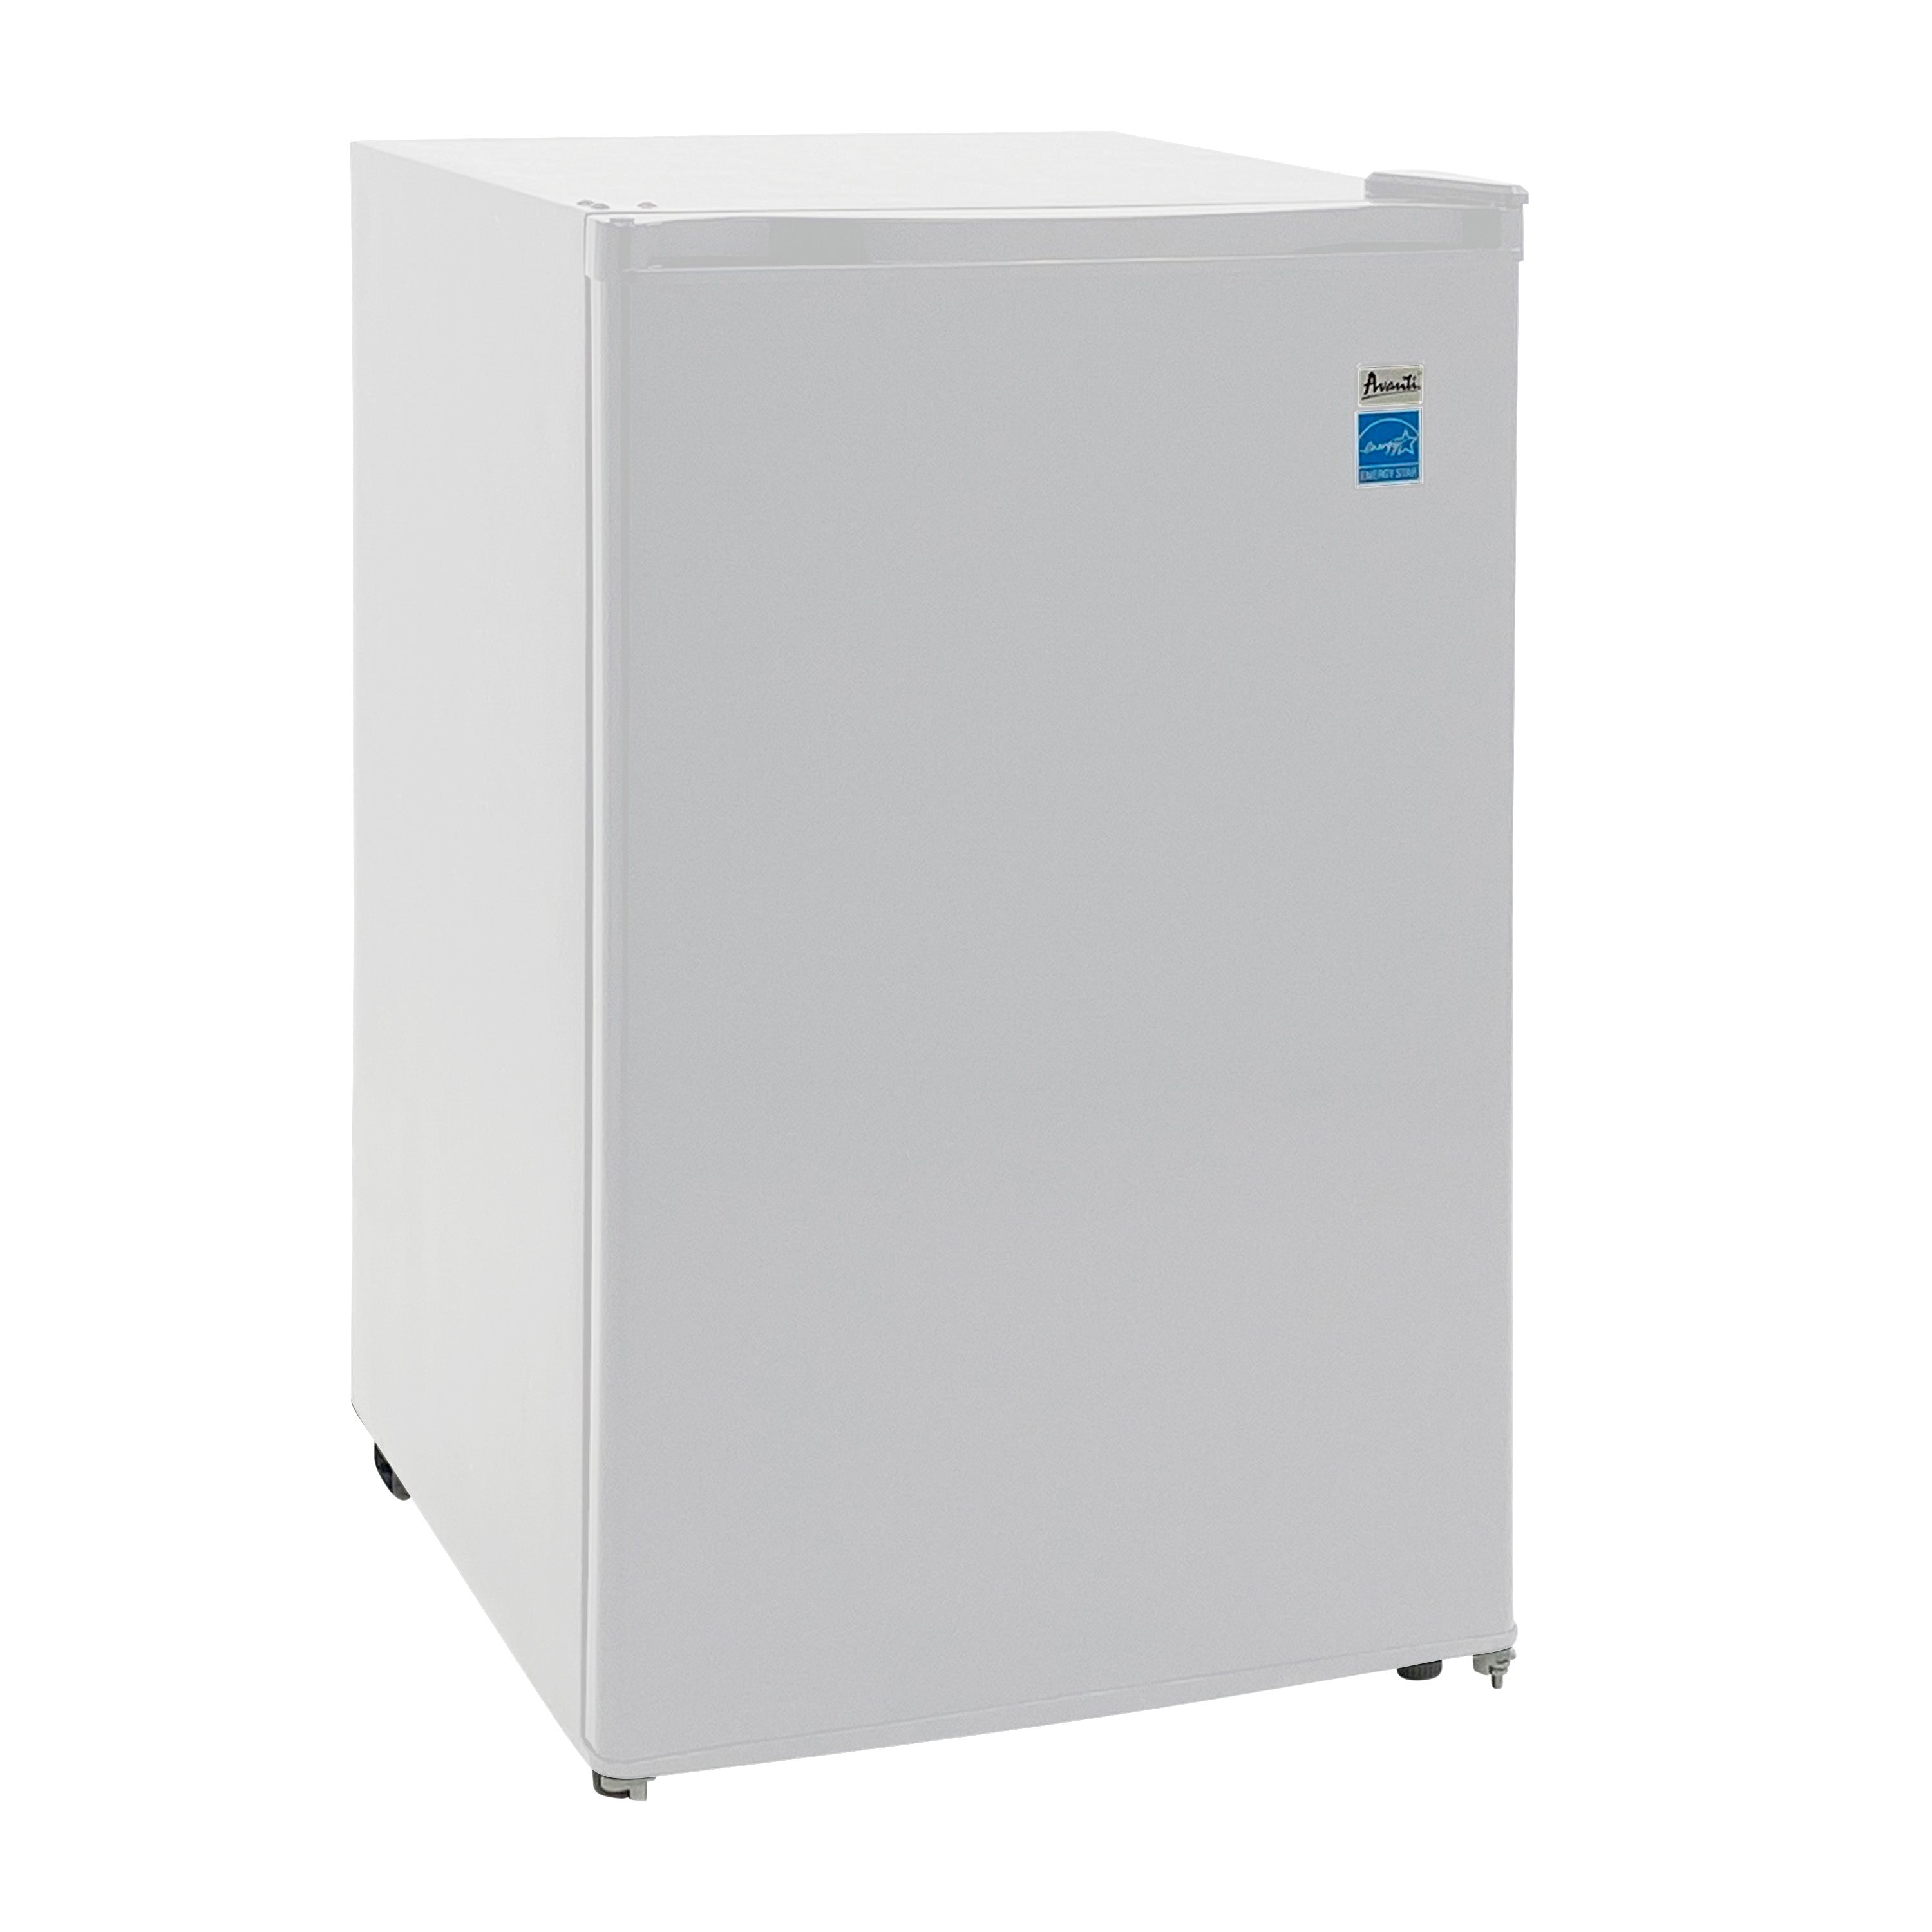 Avanti - RM46J0W, Avanti 4.4 cu. ft. Compact Refrigerator, Mini-Fridge, in White